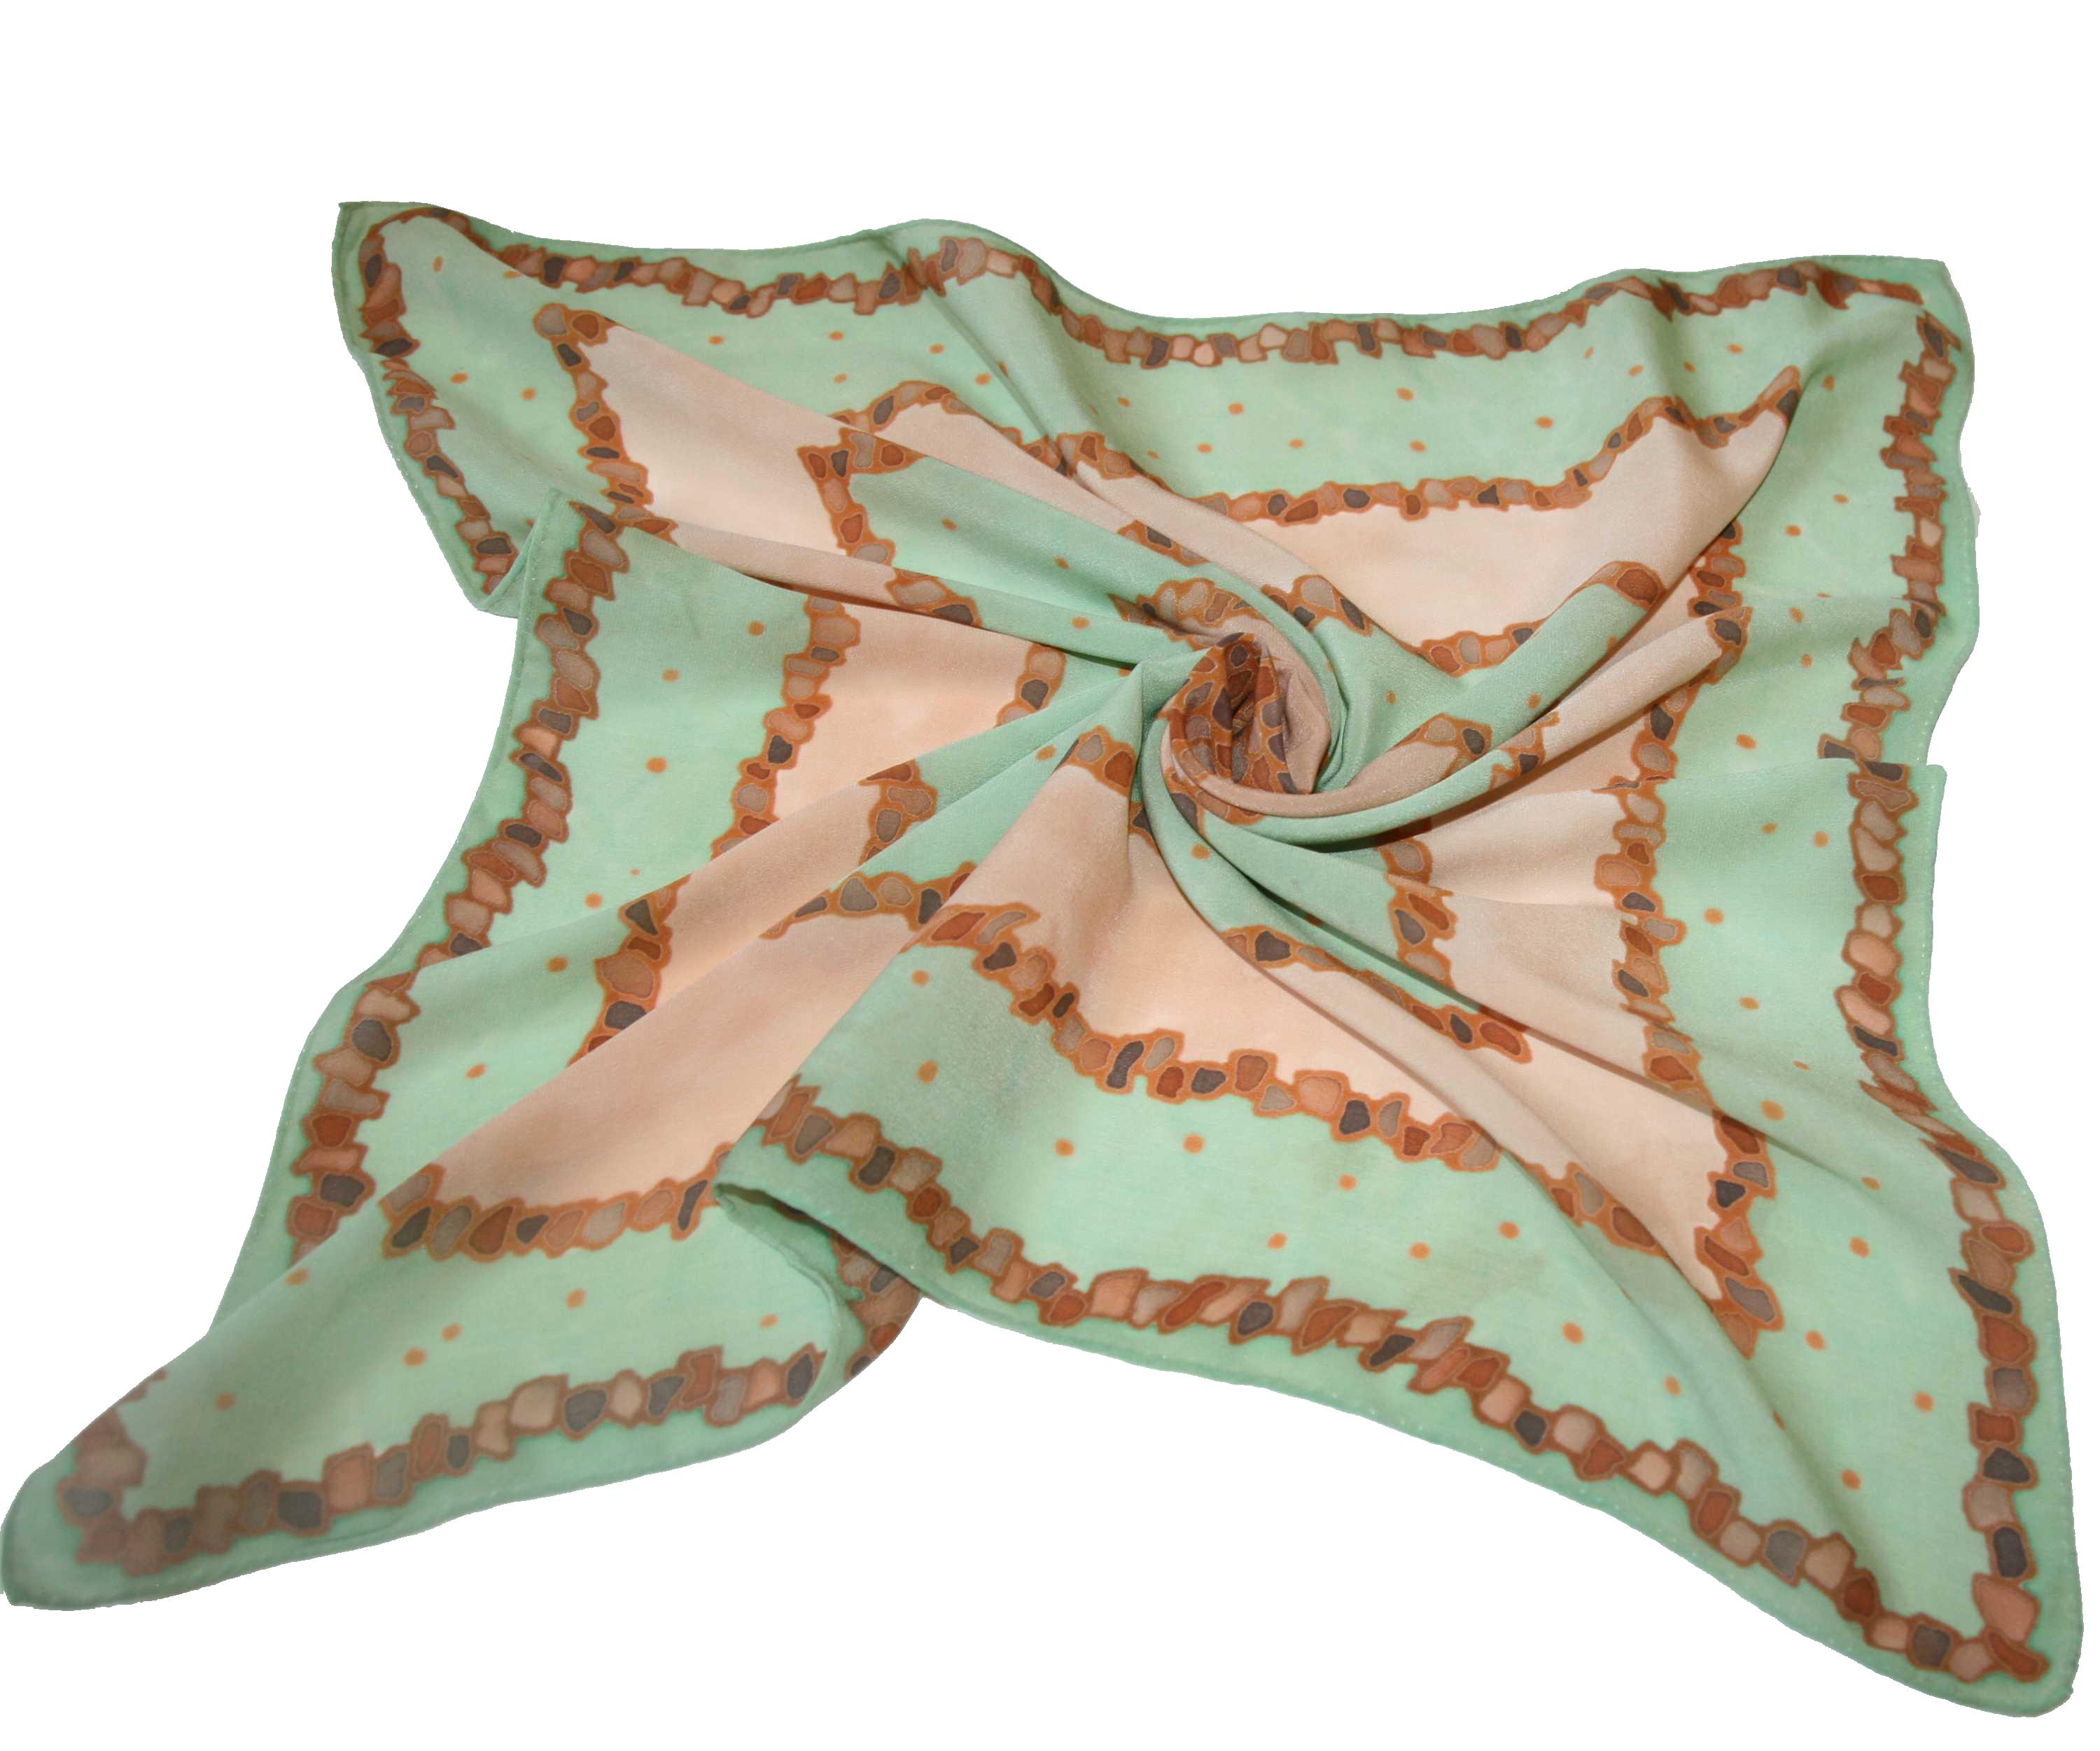 Malovaný hedvábný šátek - Kameny zeleno-hnědé